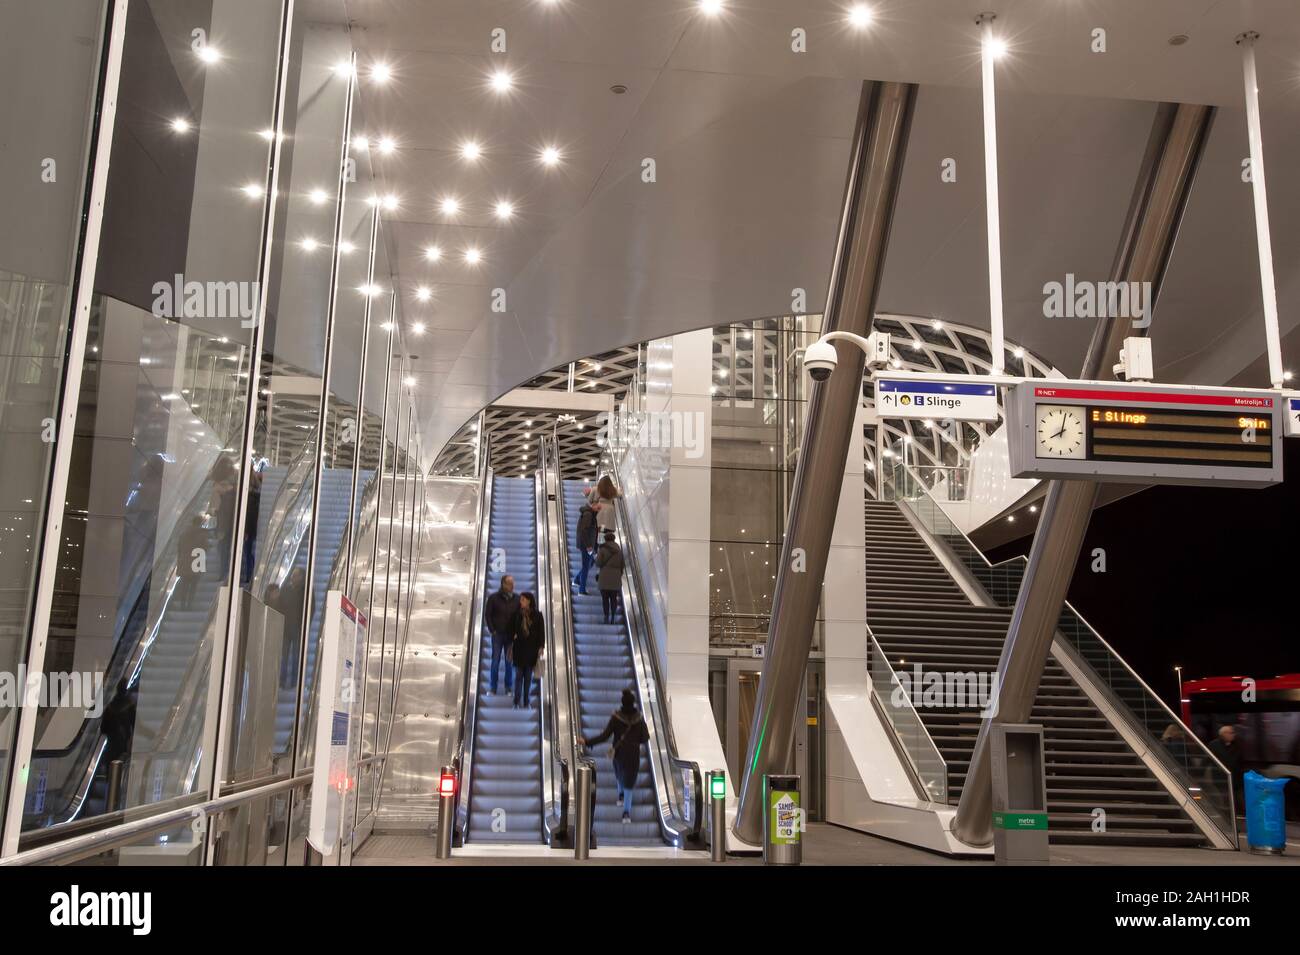 The Hague Metro E-Line Station, is by Dutch architects ZJA Zwarts & Jansma  Stock Photo - Alamy